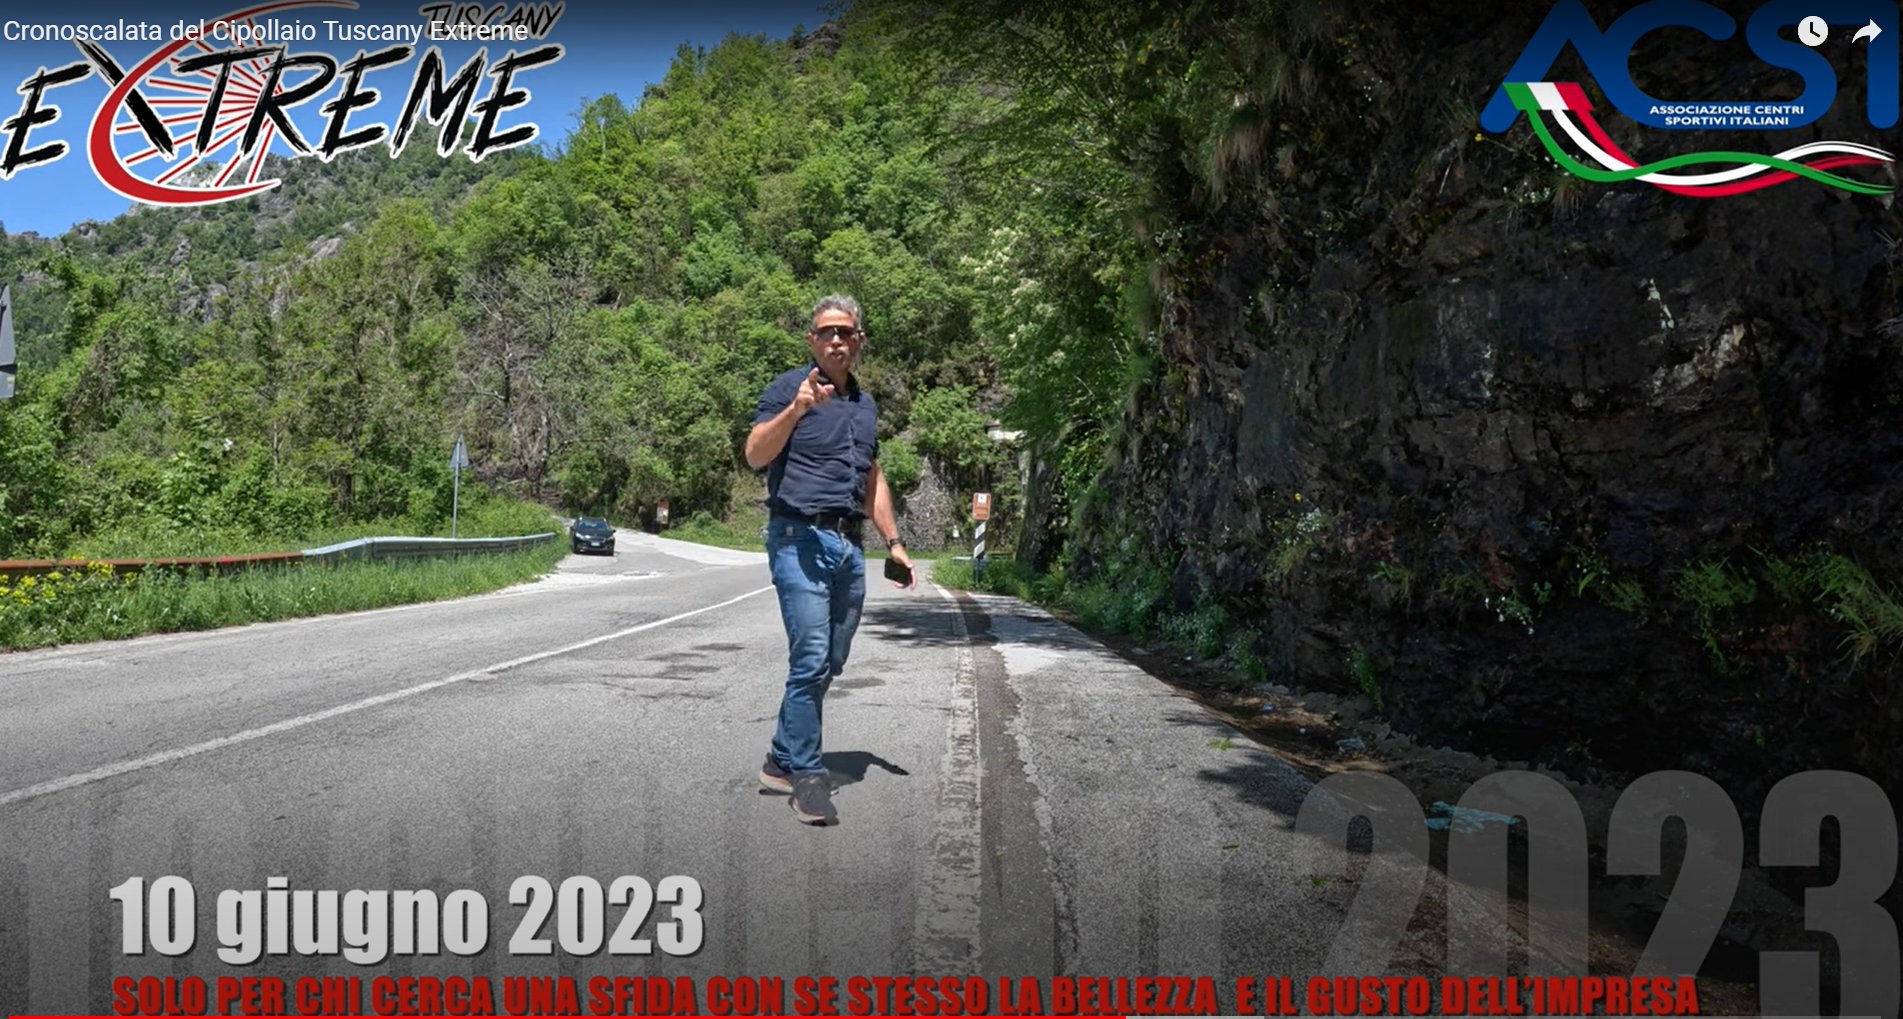 Al momento stai visualizzando Cronoscalata del Cipollaio – Tuscany Extreme 2023